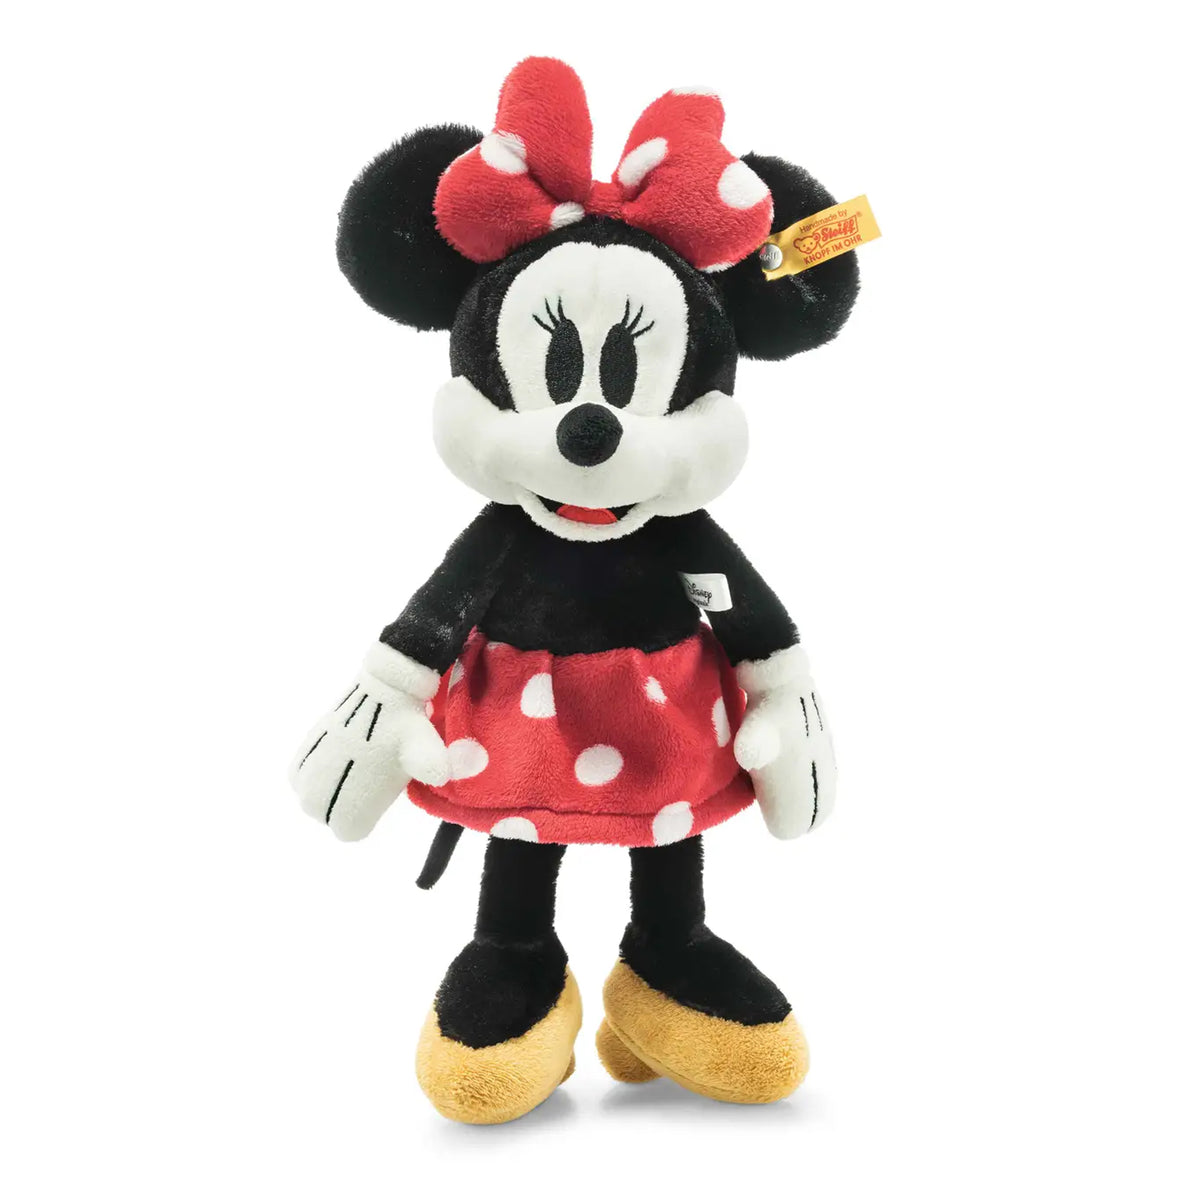 Disney Minnie Mouse 12" Steiff Plush Teddy Bear